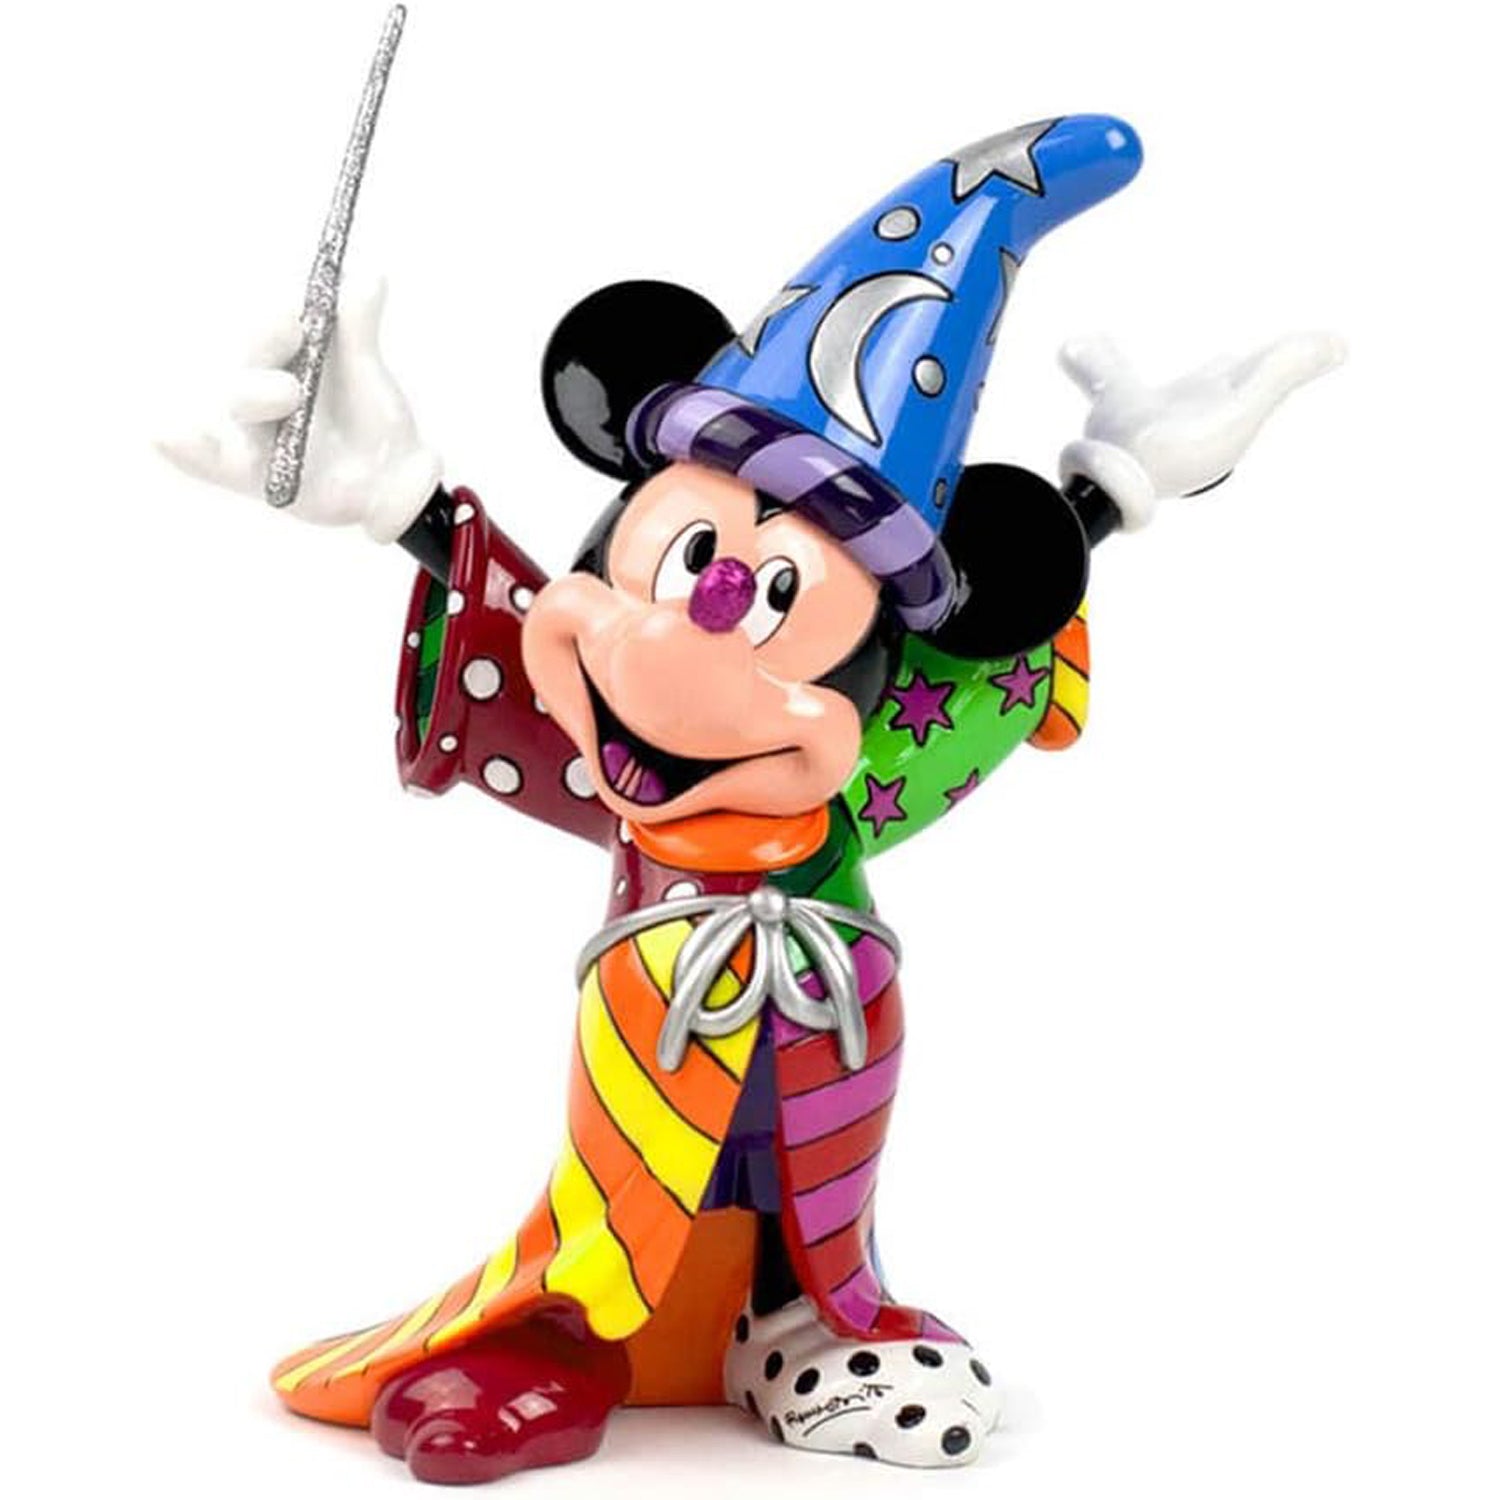 Mickey-der-Zauberer-Britto-berlindeluxe-zauberhut-zauberstab-mantel